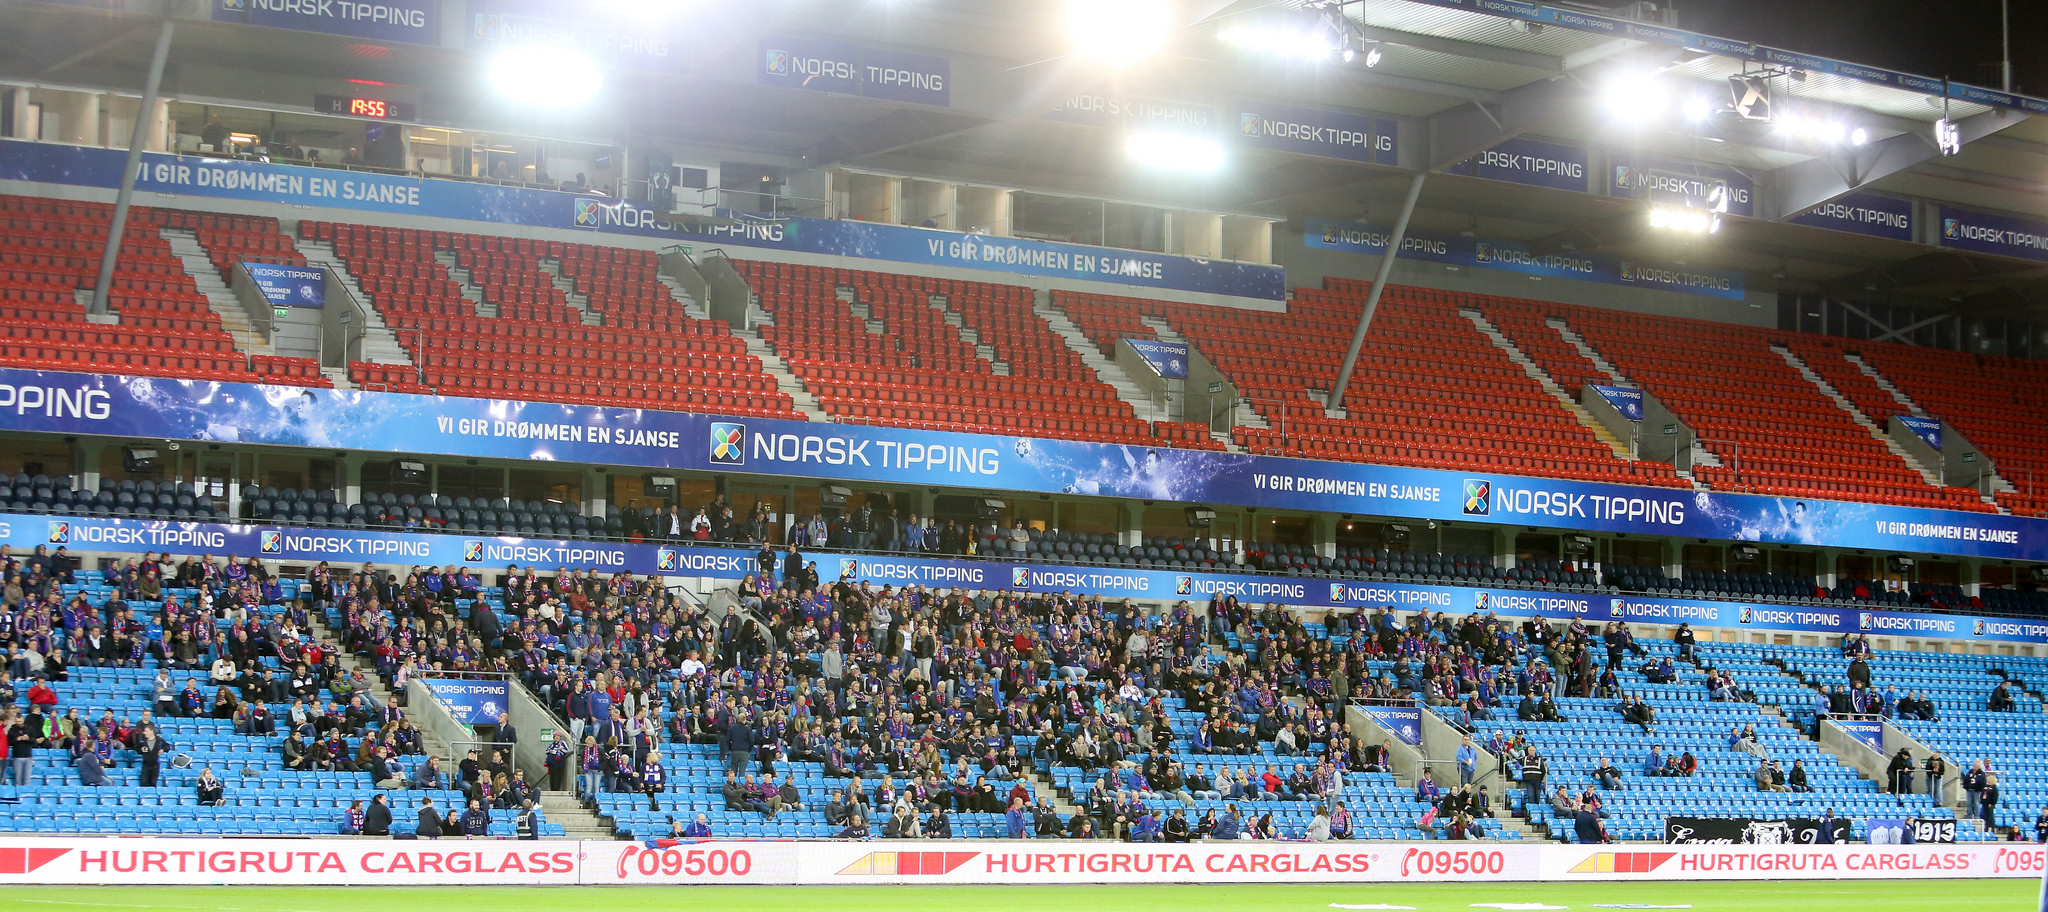 Bare 8.308 tilskuere hadde løst billett mot Start. Lang færre møtte faktisk opp. Foto: Eivind Hauger.